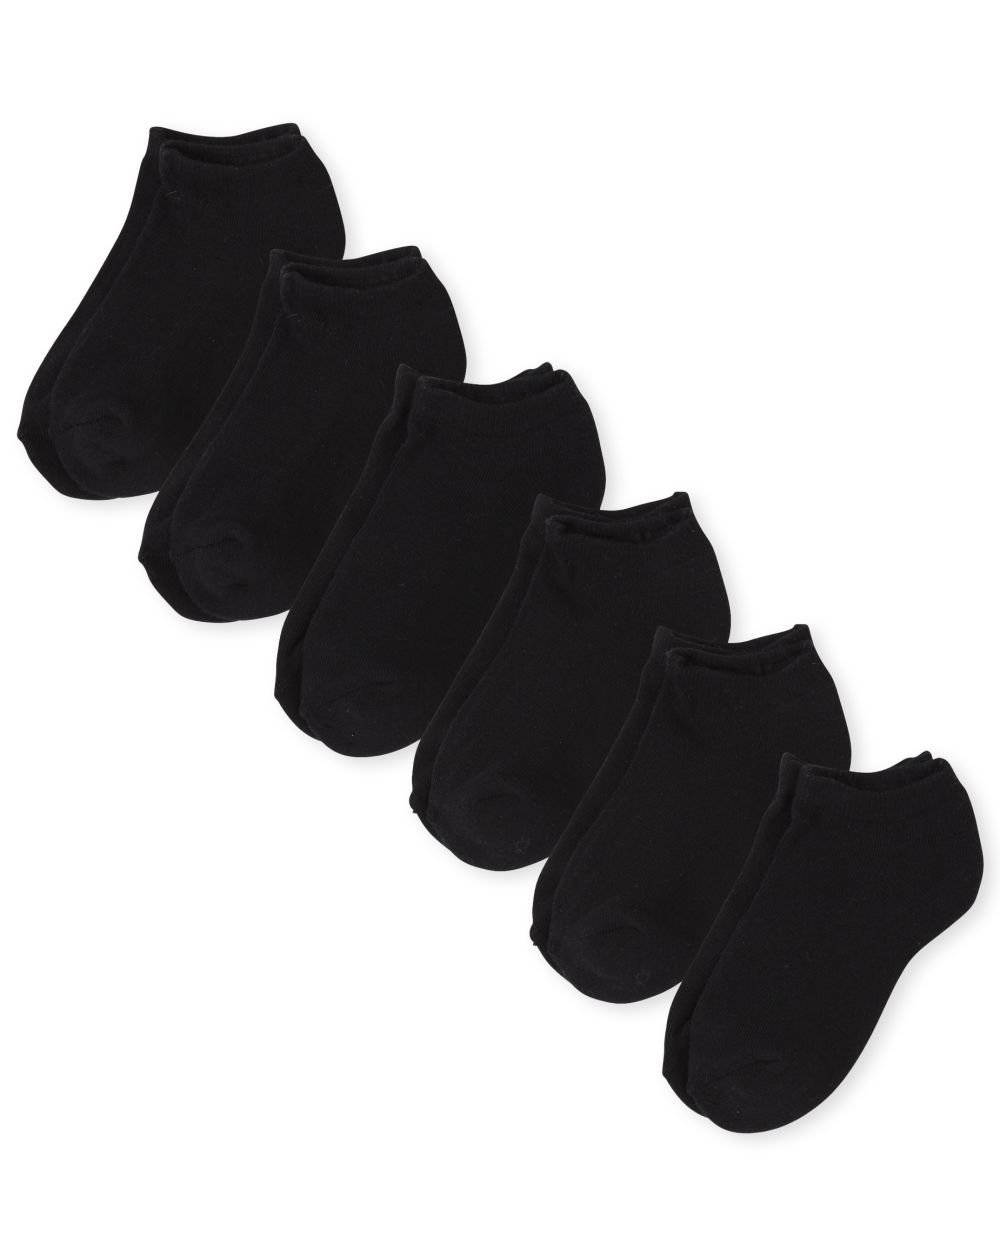 

Boys Unisex Kids Ankle Socks 6-Pack - Black - The Children's Place